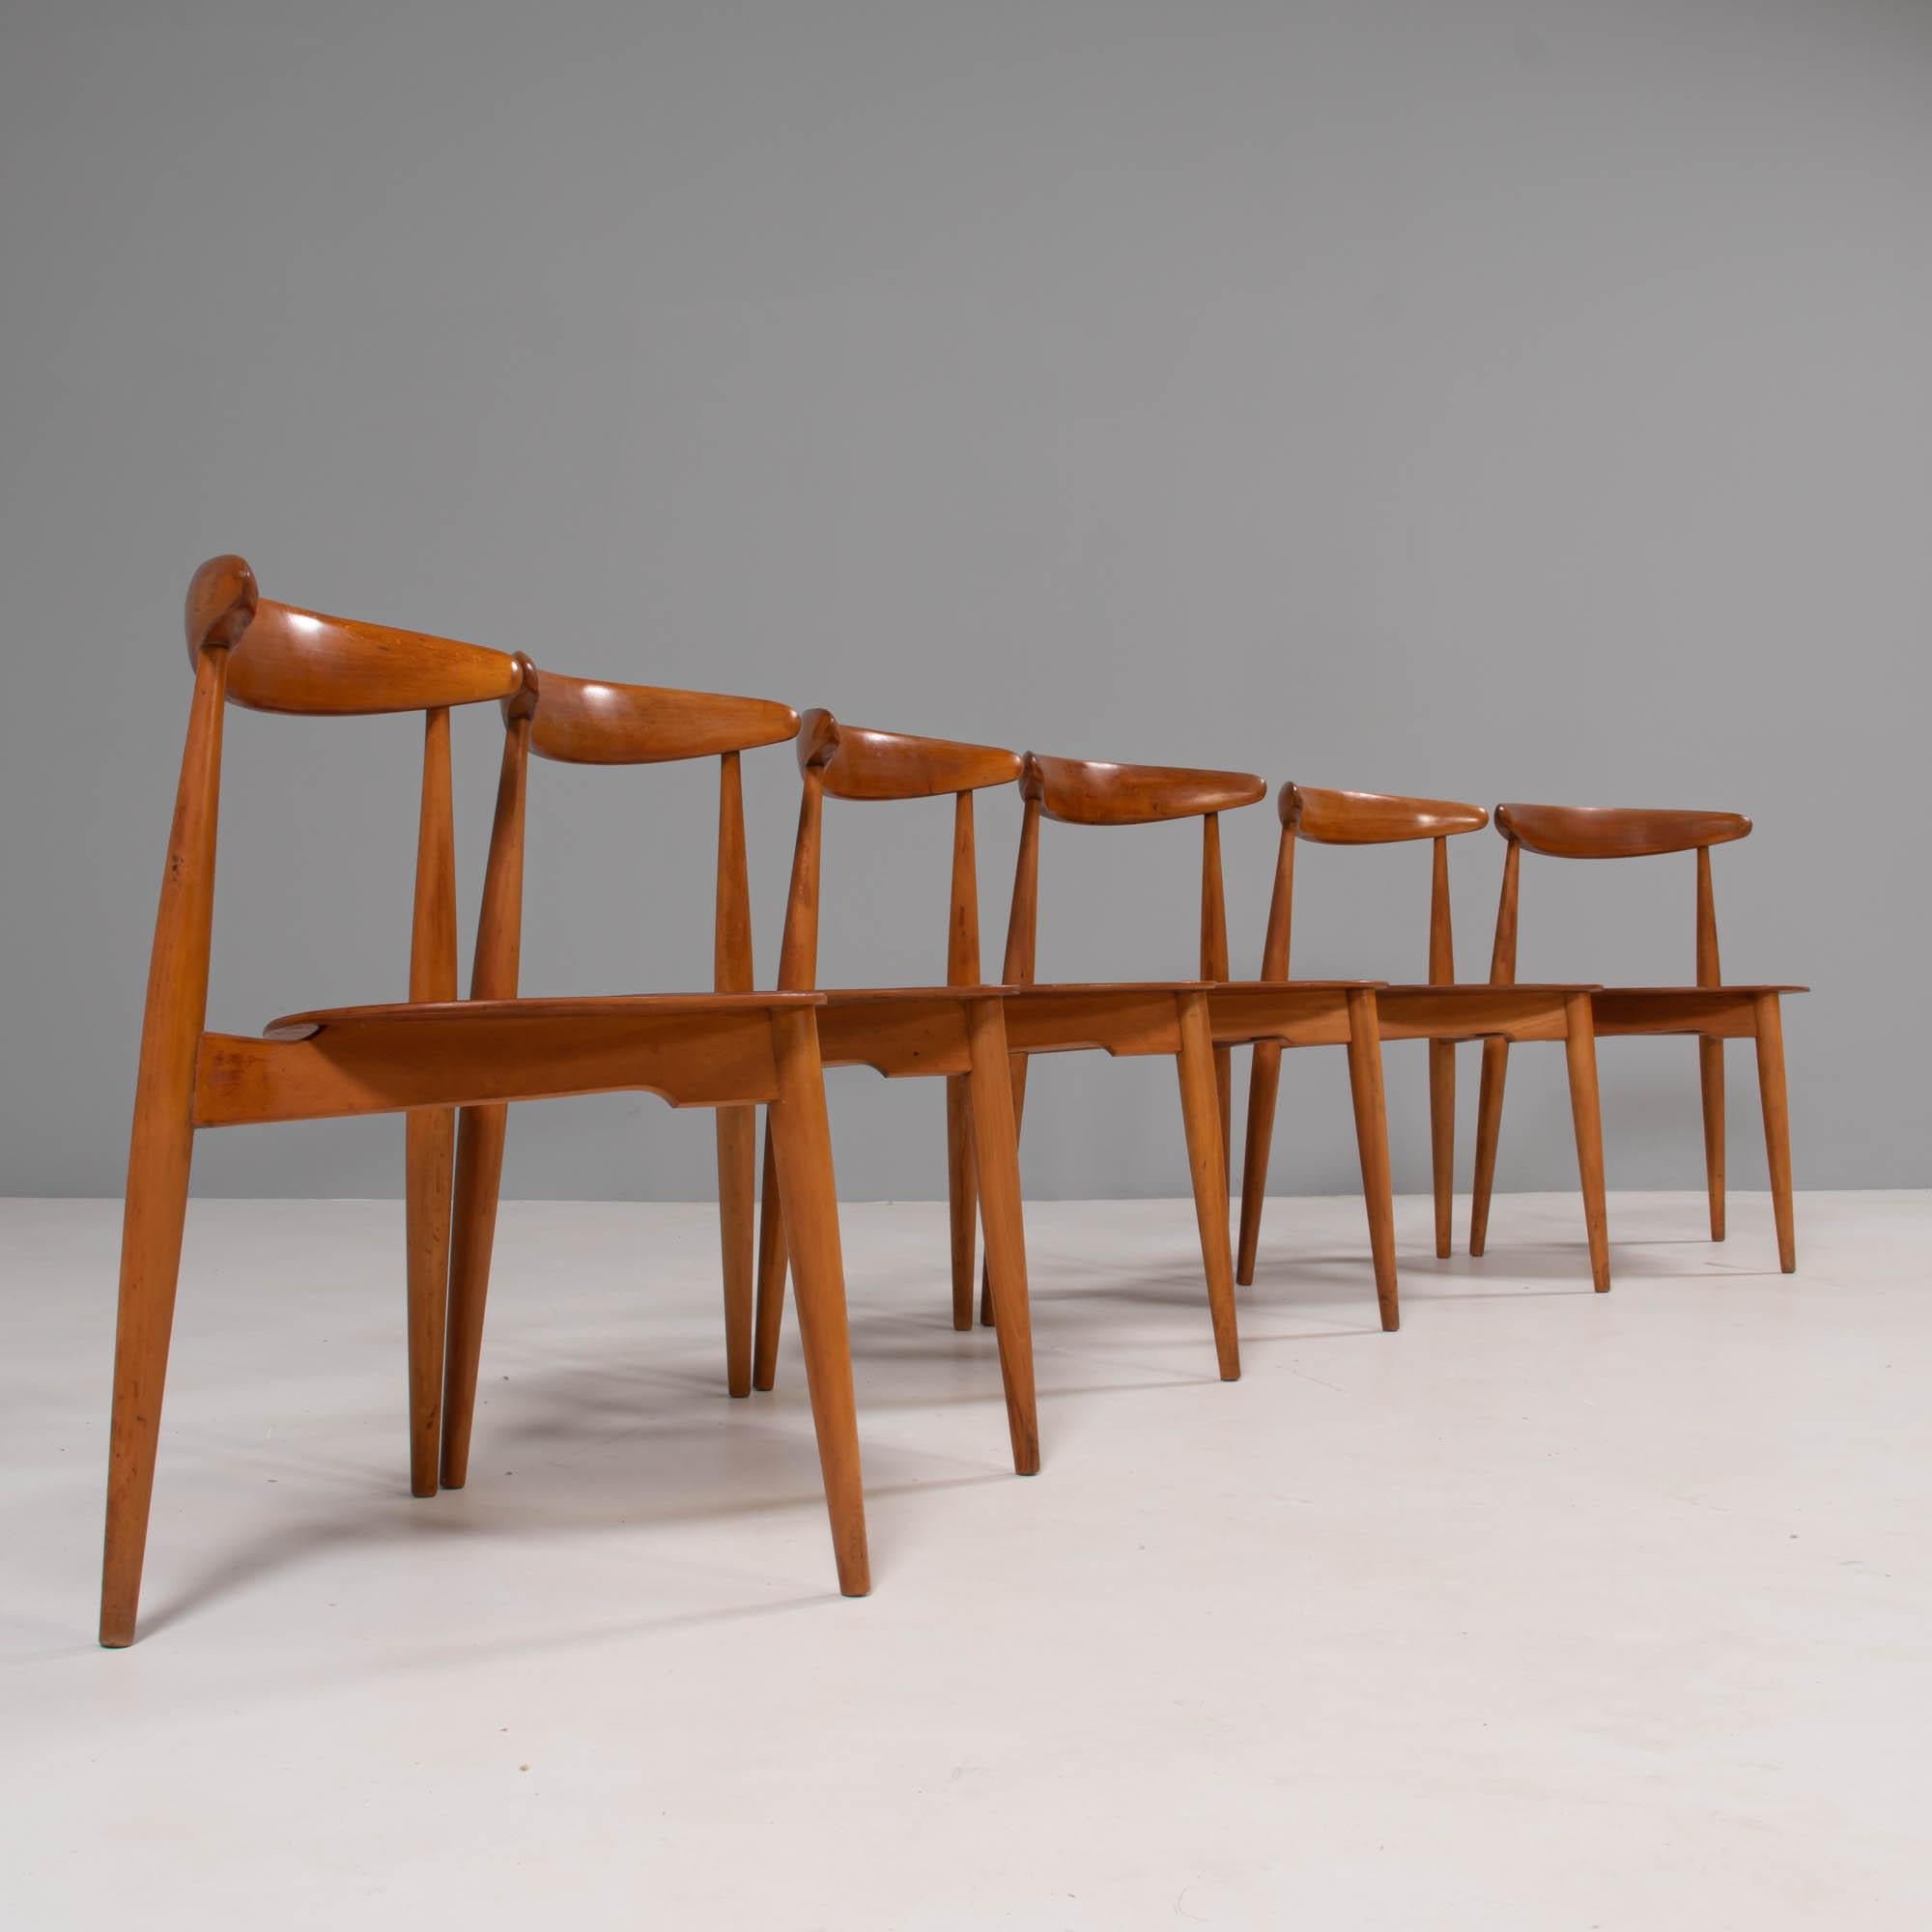 Conçu à l'origine par Hans Wegner dans les années 1950, le FH4103 a été fabriqué par Fritz Hansen et vendu à Londres par Story's of Kensington.

Construites en bois de hêtre et de teck, les chaises FH4103 sont également connues sous le nom de